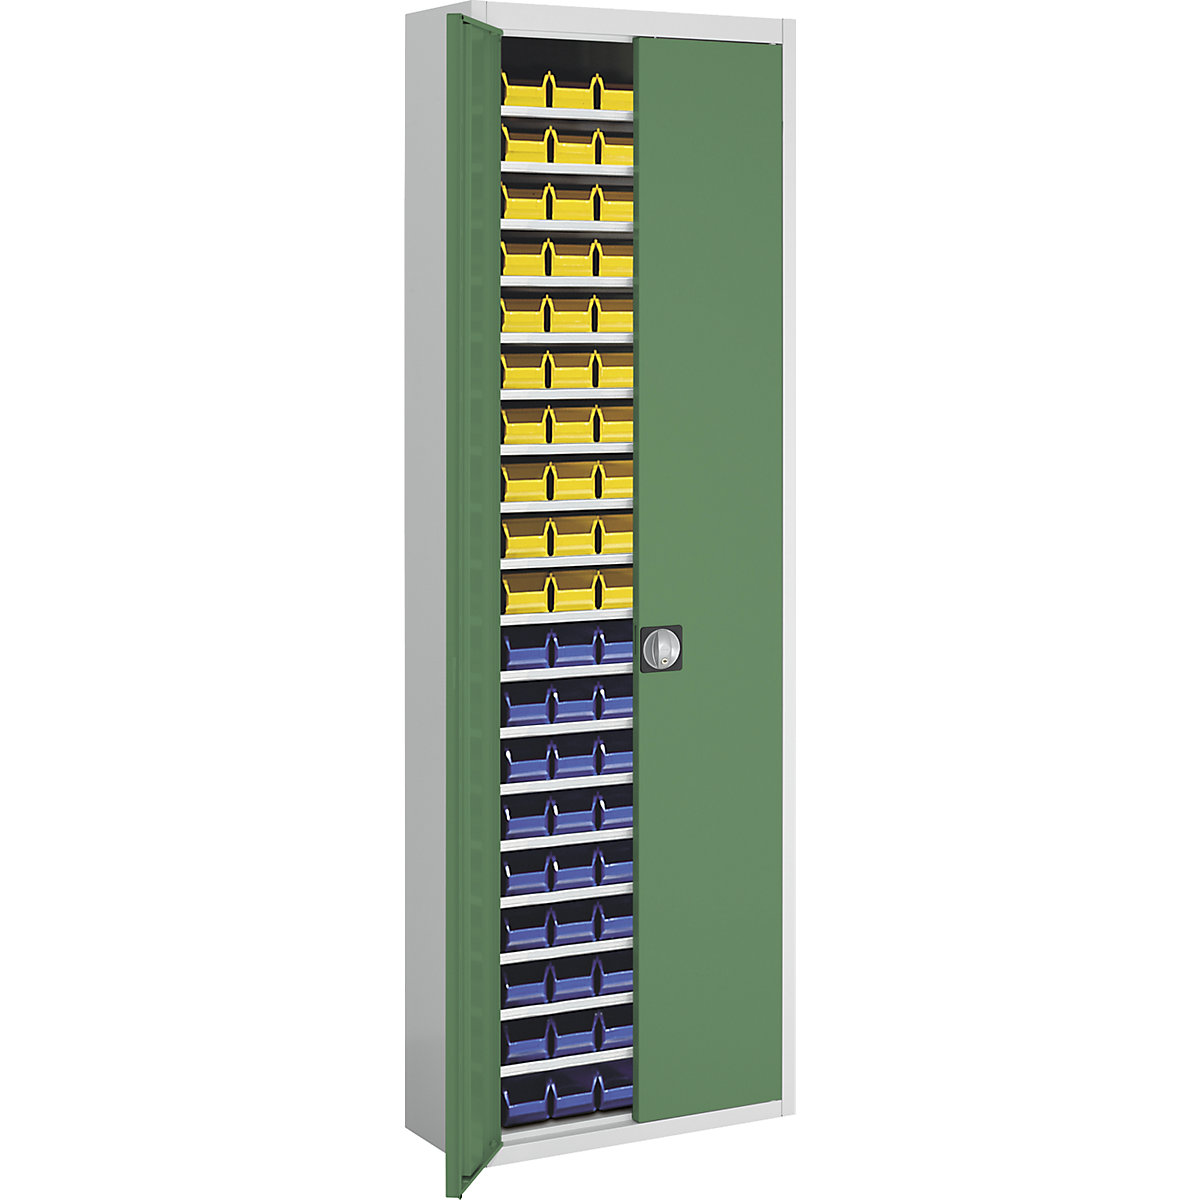 Skladišni ormar s otvorenim skladišnim kutijama – mauser, VxŠxD 2150 x 680 x 280 mm, u dvije boje, korpus u sivoj boji, vrata u zelenoj boji, 114 kutija-14